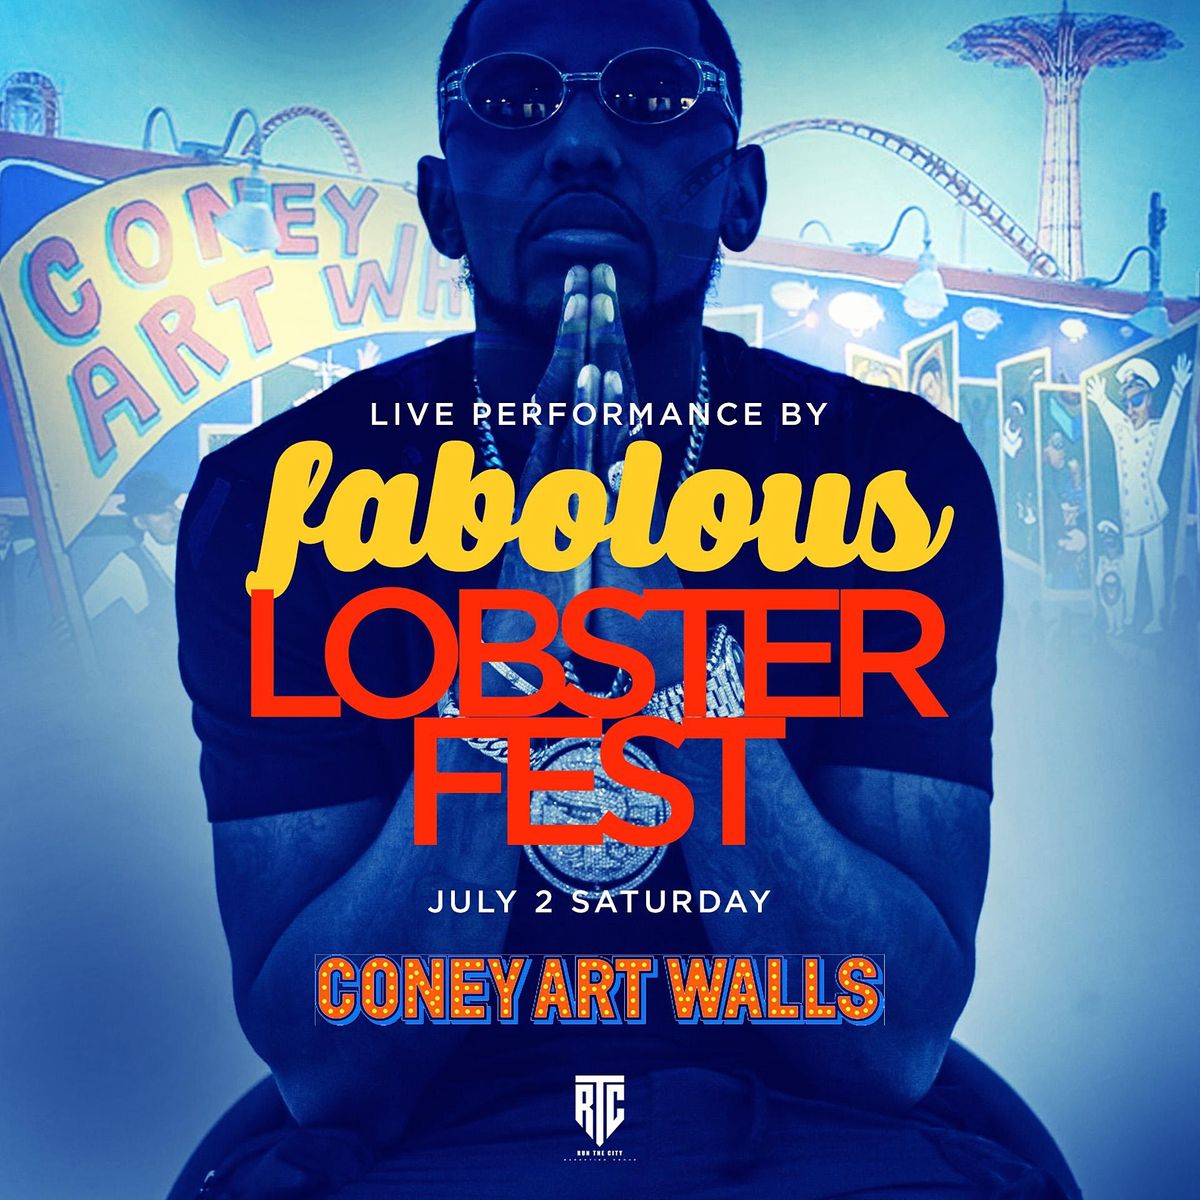 coney art walls concert